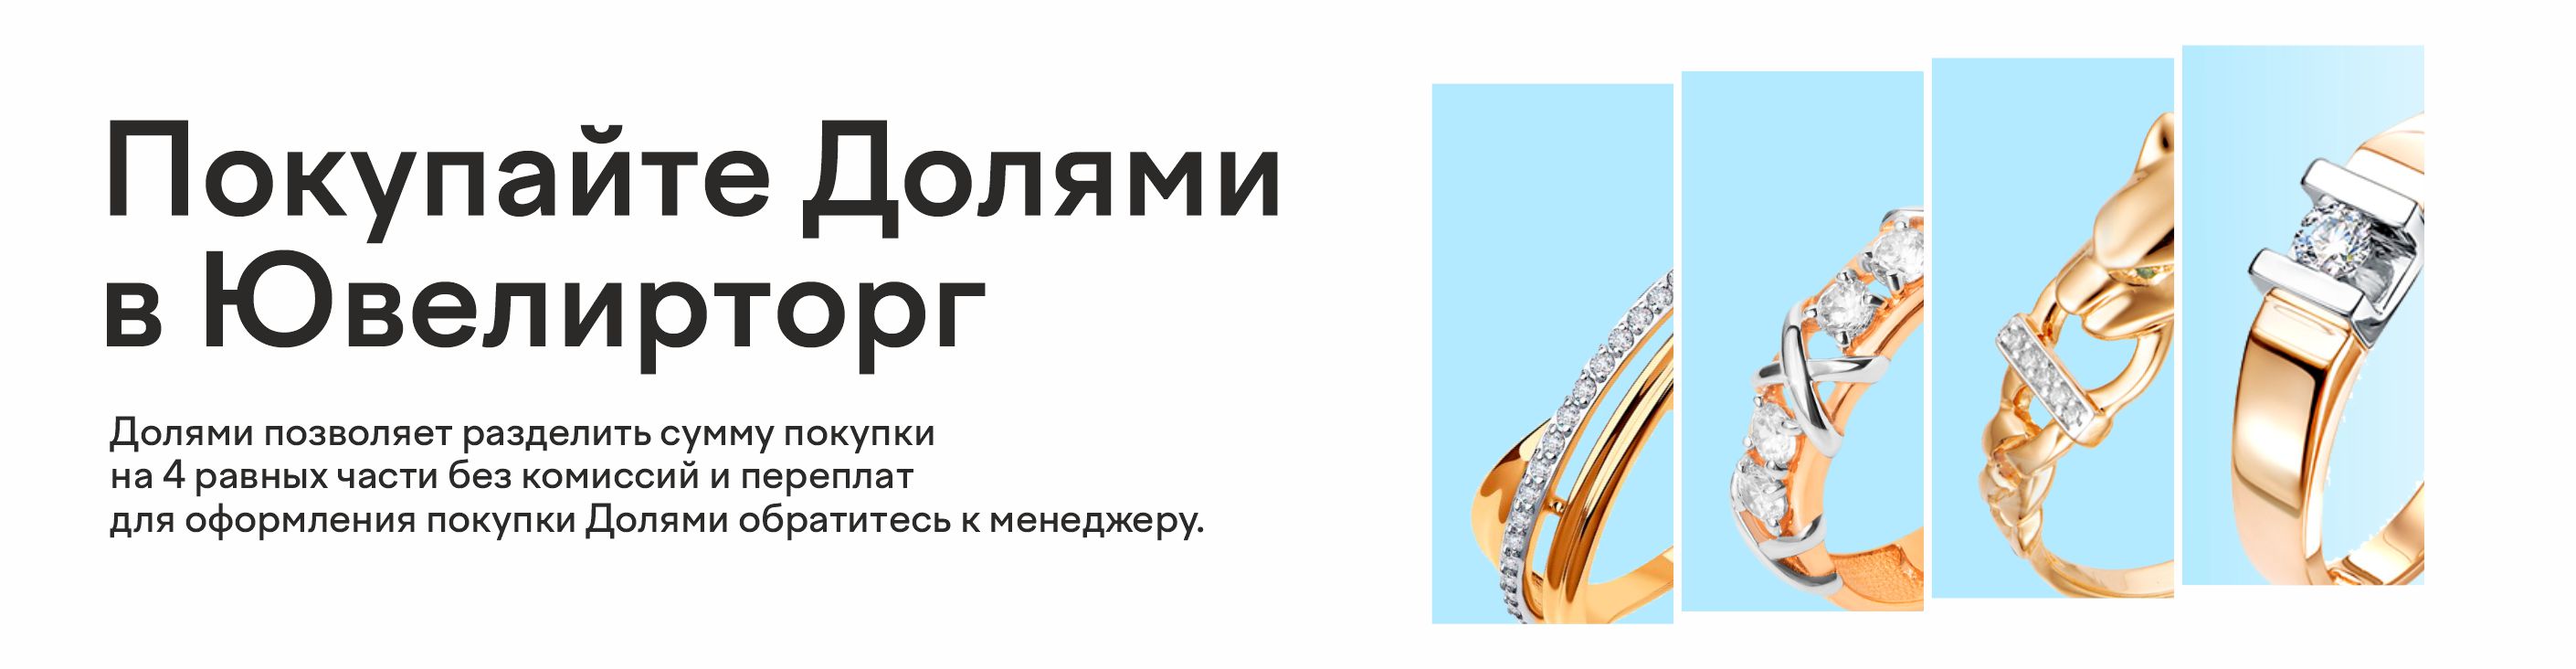 Интернет-магазин Ювелирторг — сеть ювелирных магазинов в Омске